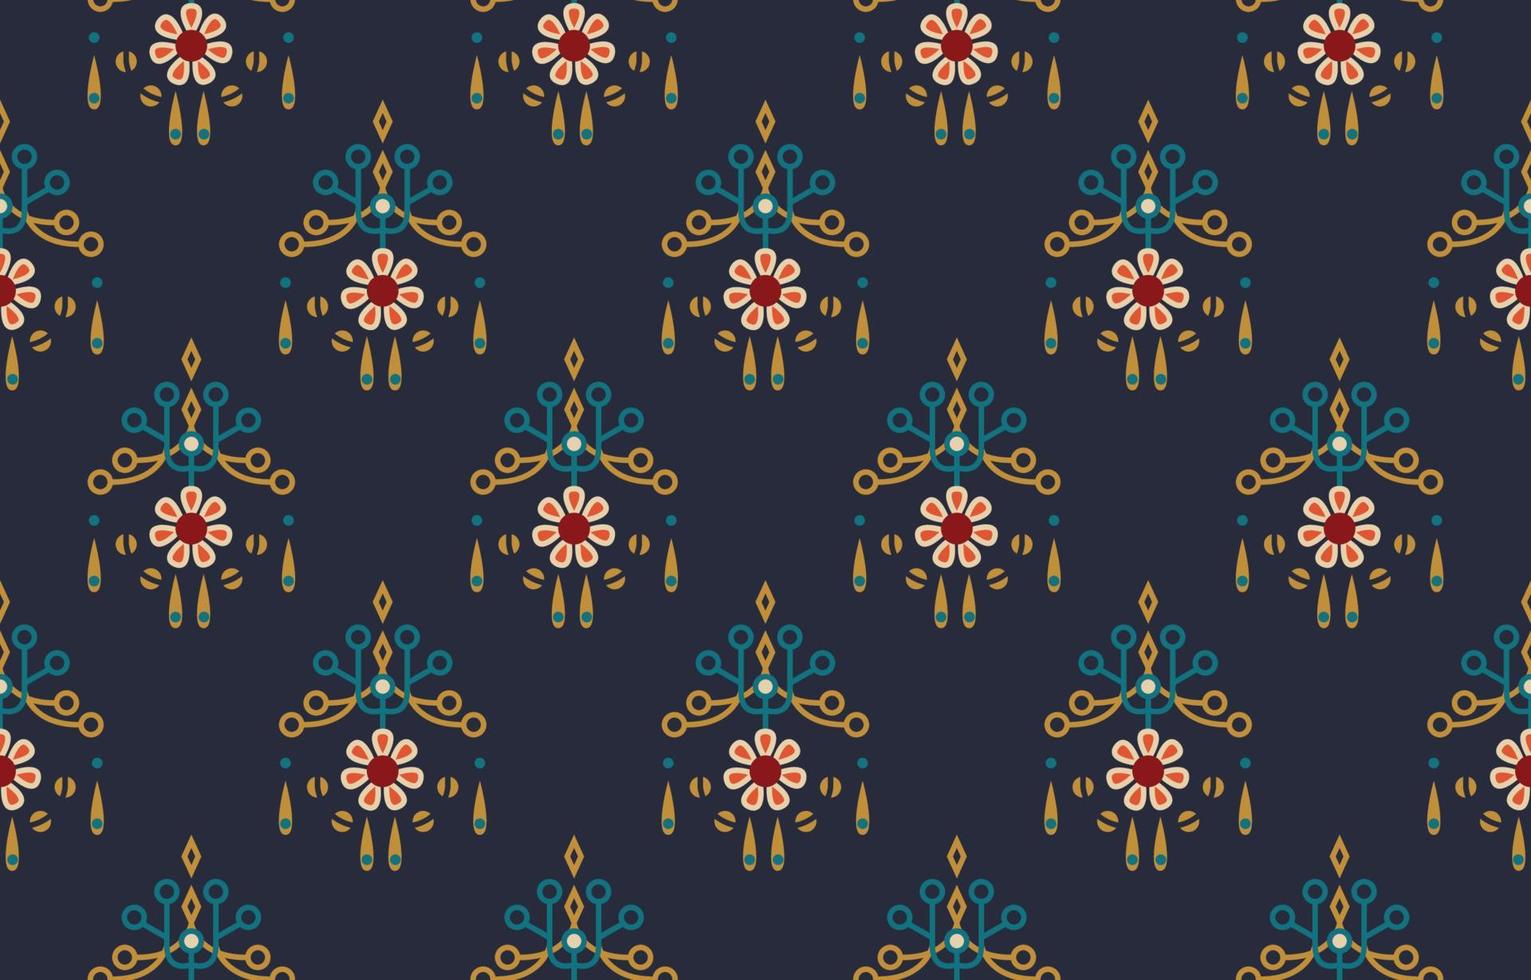 arte étnico abstracto con estampado de flores. patrón impecable en estilo tribal, bordado folclórico y mexicano. estampado de adornos de arte geométrico azteca.diseño para alfombras, prendas de vestir, envolturas, telas, cubiertas, textiles vector